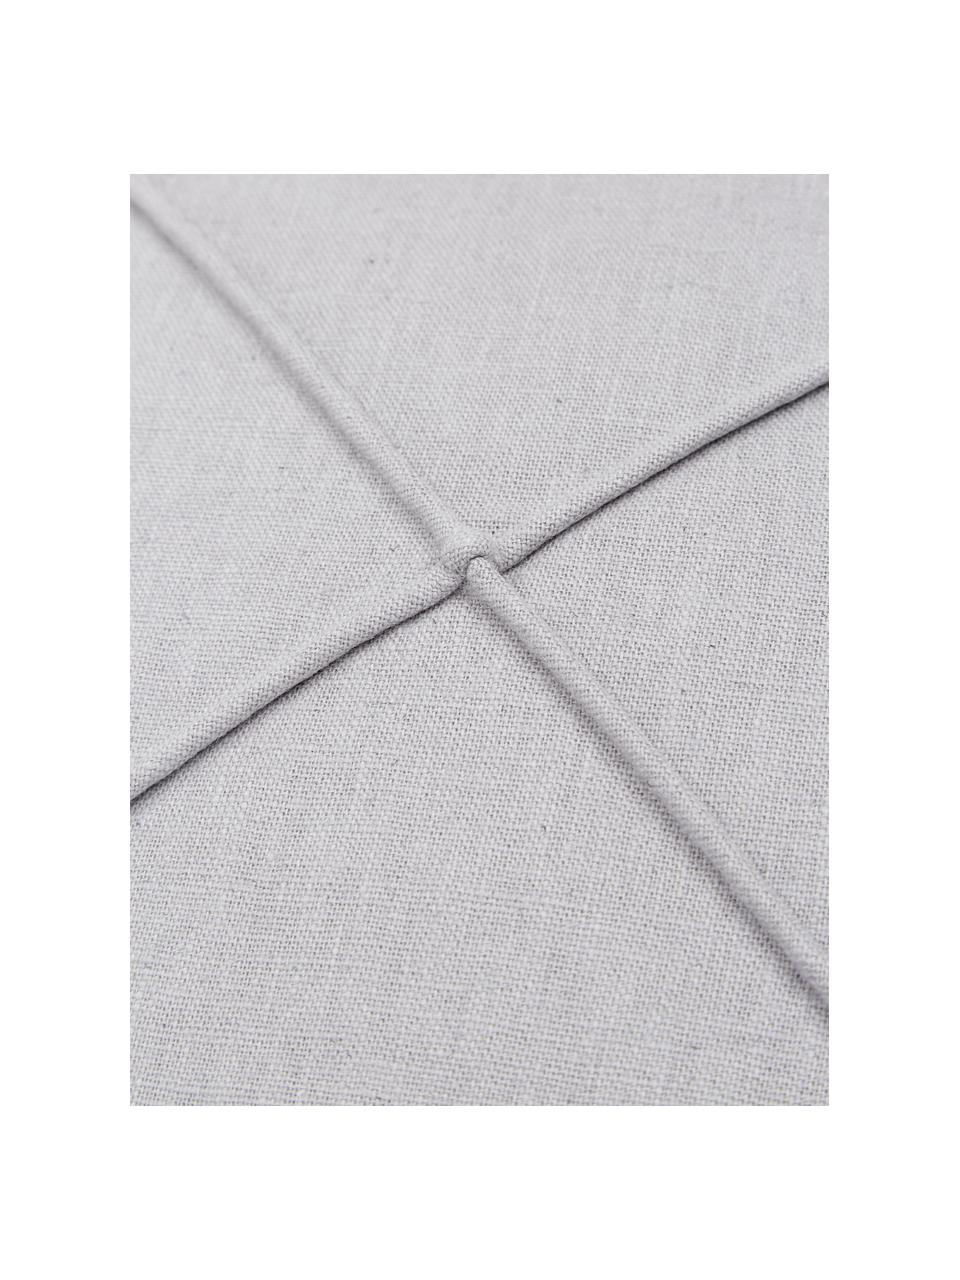 Kussenhoes Darla in grijs met structuurpatroon, 51% linnen, 49% katoen, Grijs, B 45 x L 45 cm